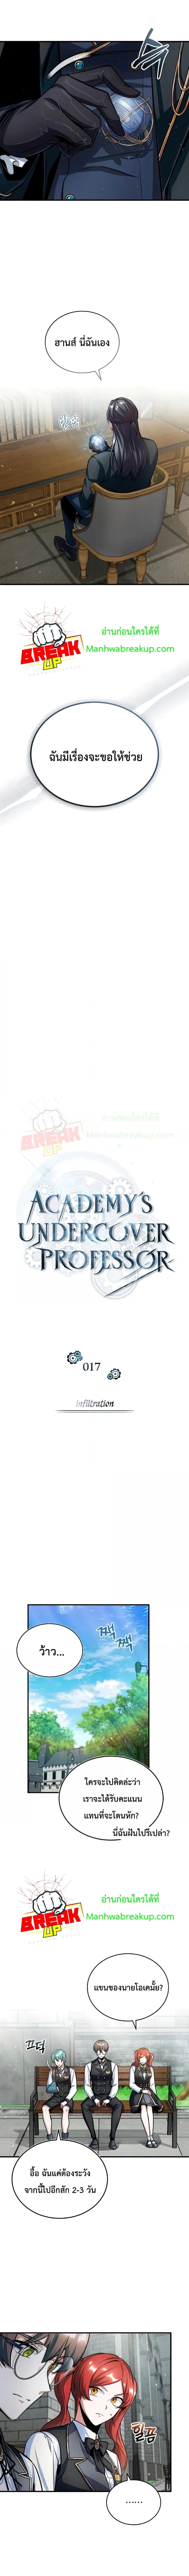 Academy’s Undercover Professor 17 (2)